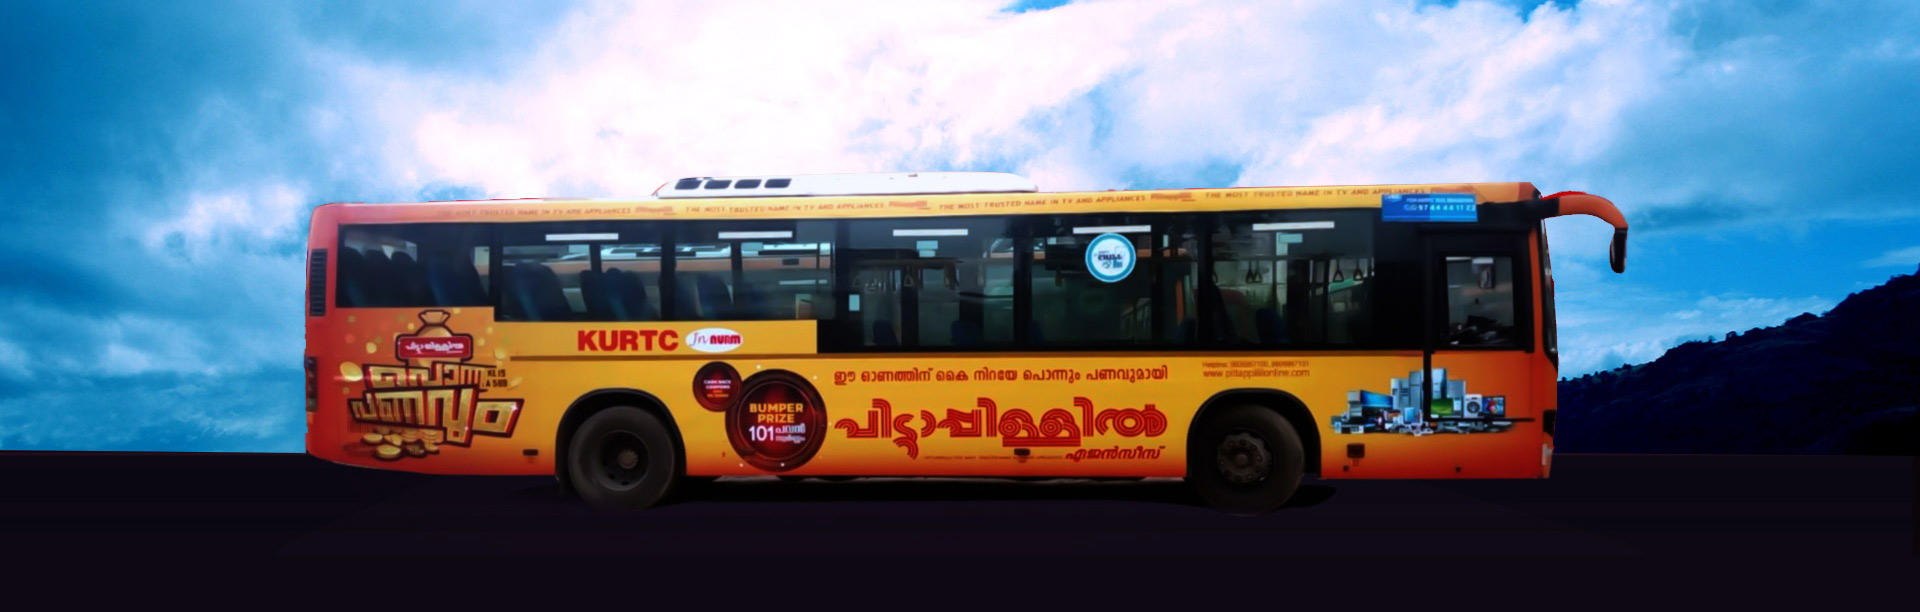 transit advertising companies in kerala